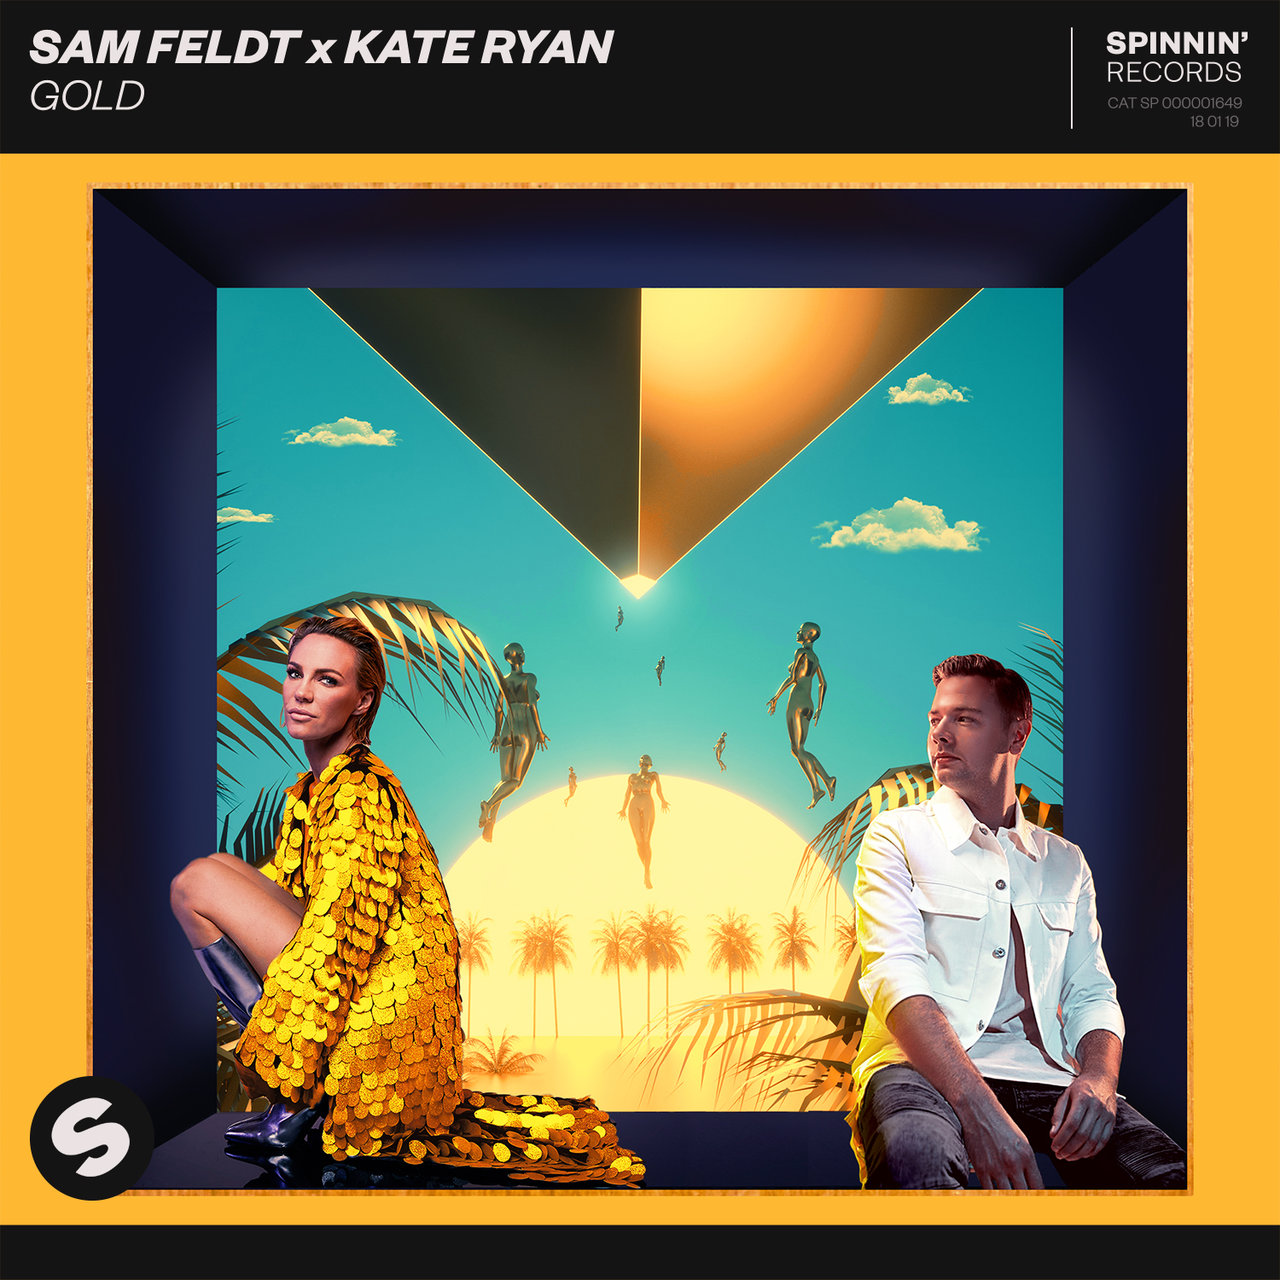 Sam Feldt & Kate Ryan Gold cover artwork